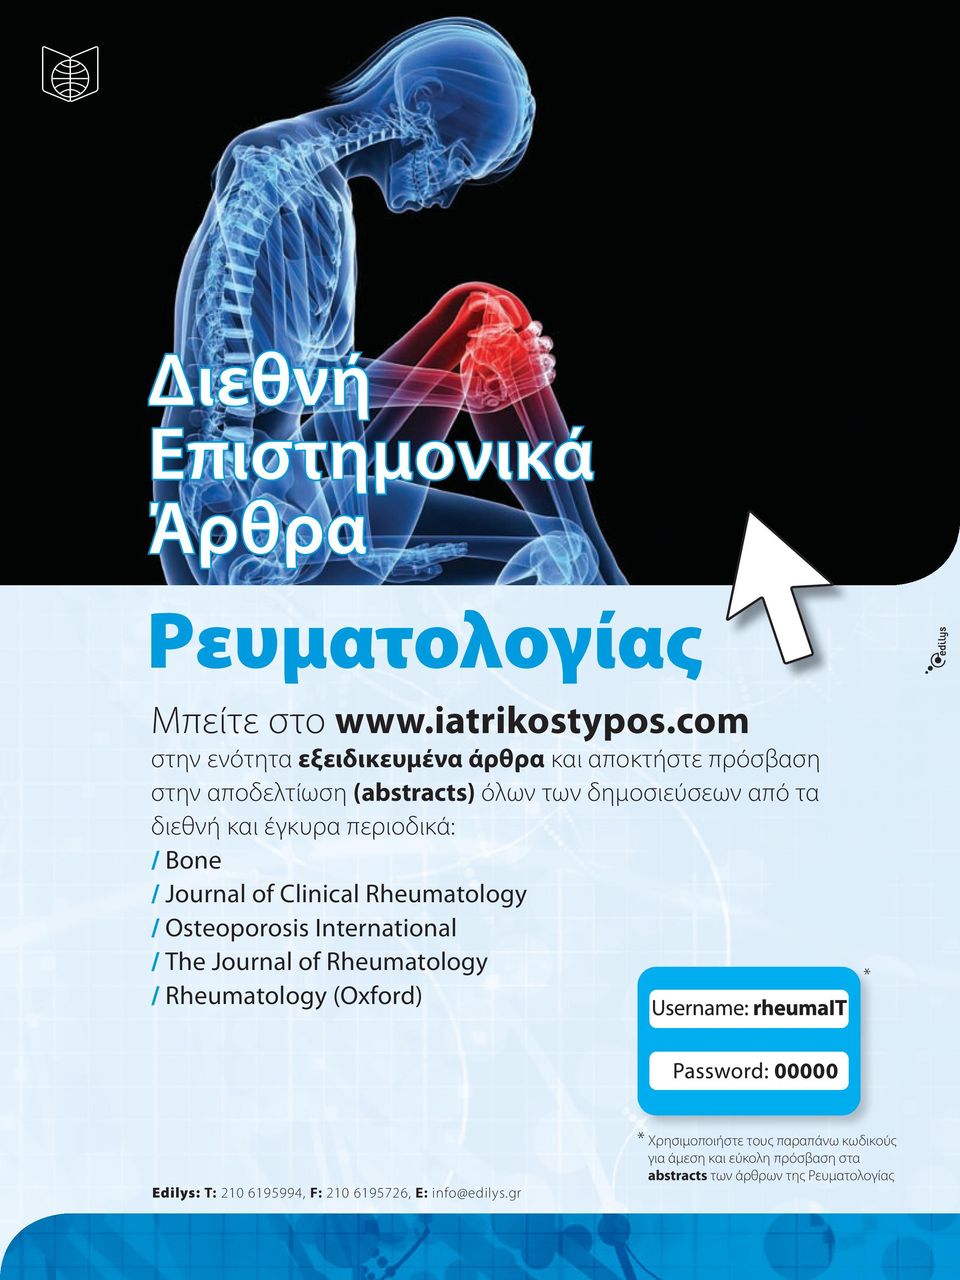 έγκυρα περιοδικά: / Bone / Journal of Clinical Rheumatology / Osteoporosis International / The Journal of Rheumatology /